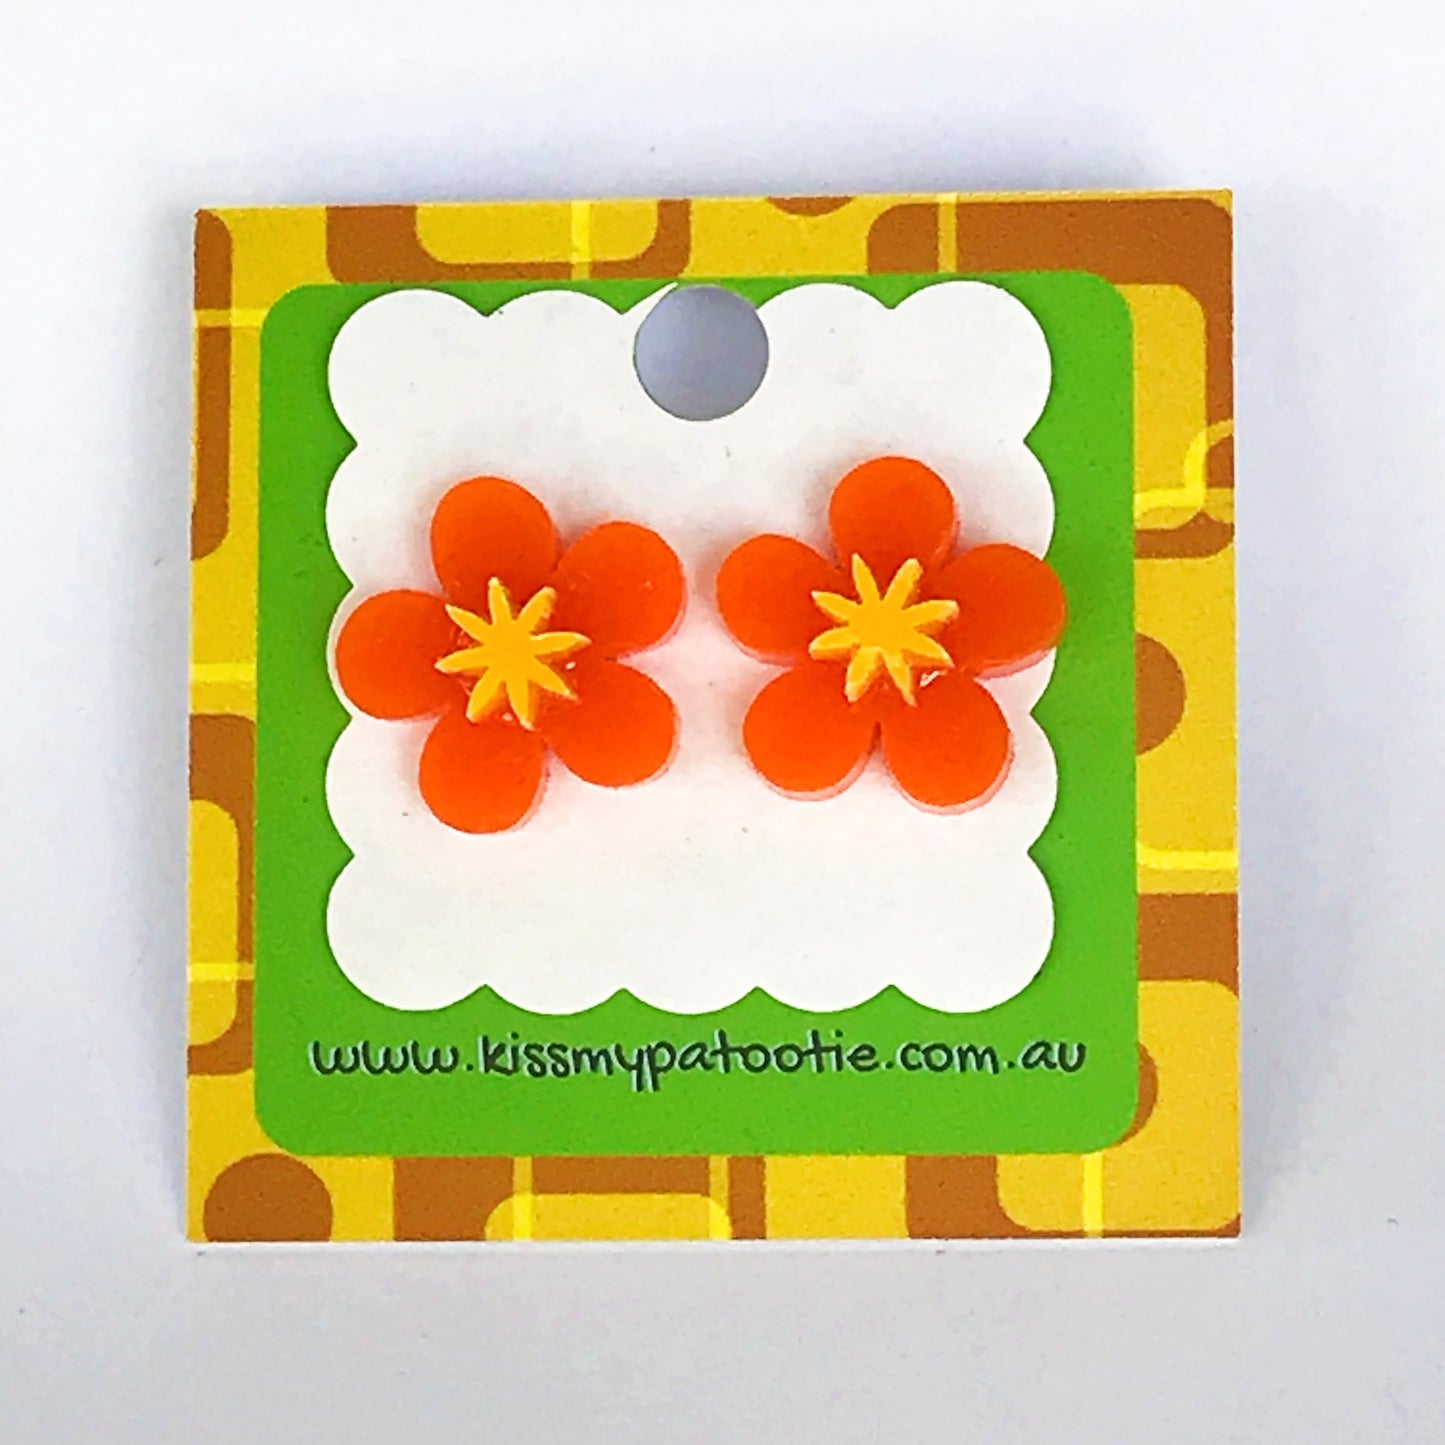 Flower laser cut acrylic earrings - daisy - orange